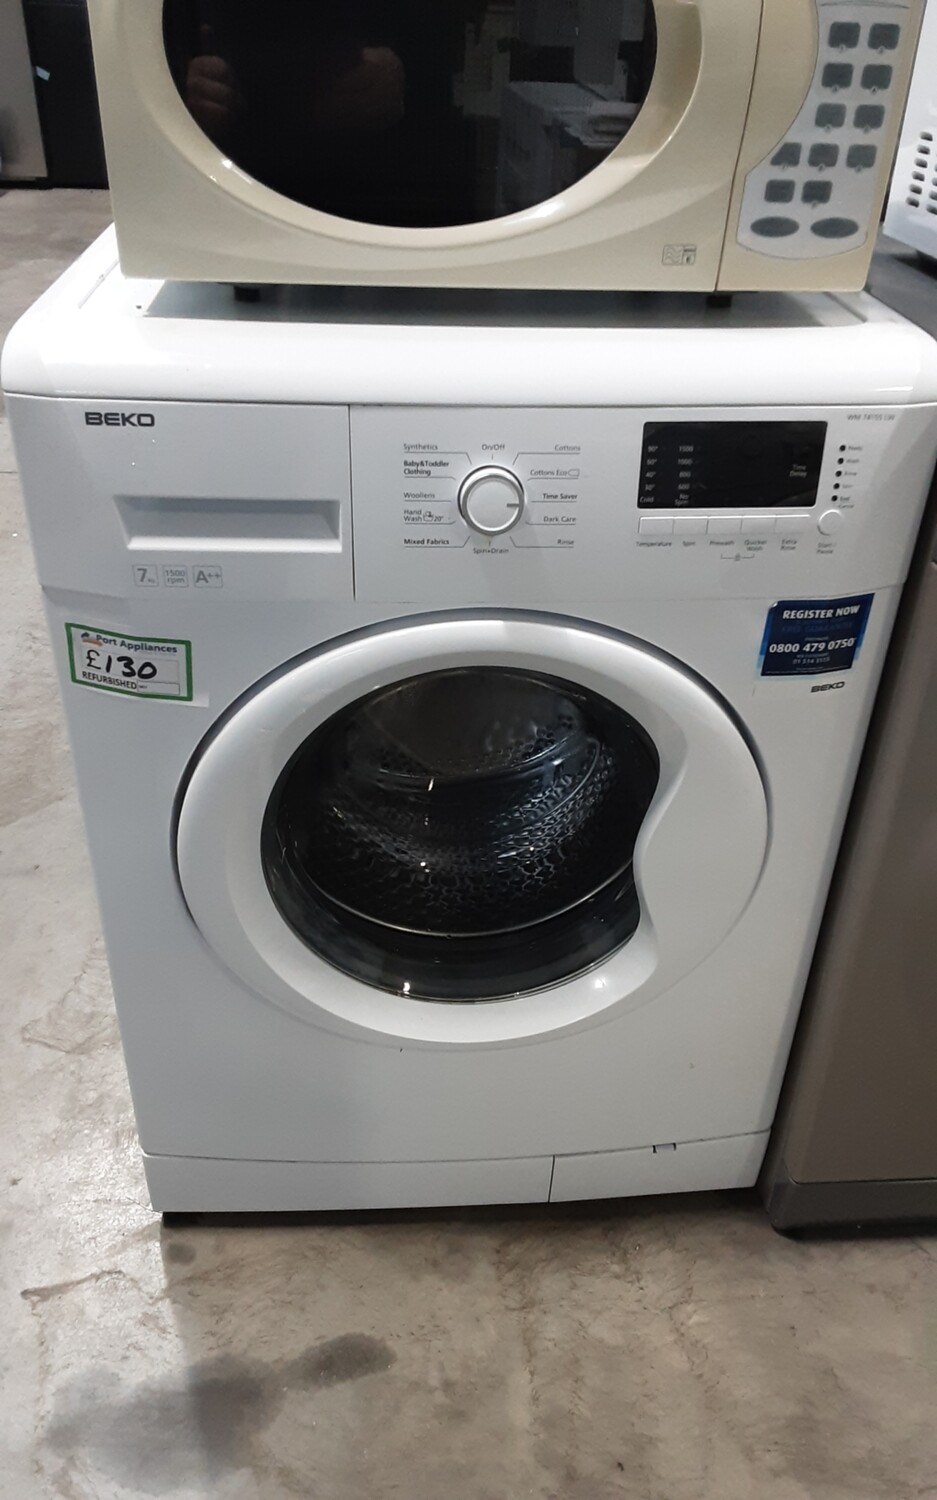 Beko WM74155LW 7kg Load 1500 Spin Washing Machine - White - Refurbished - 6 Month Guarantee